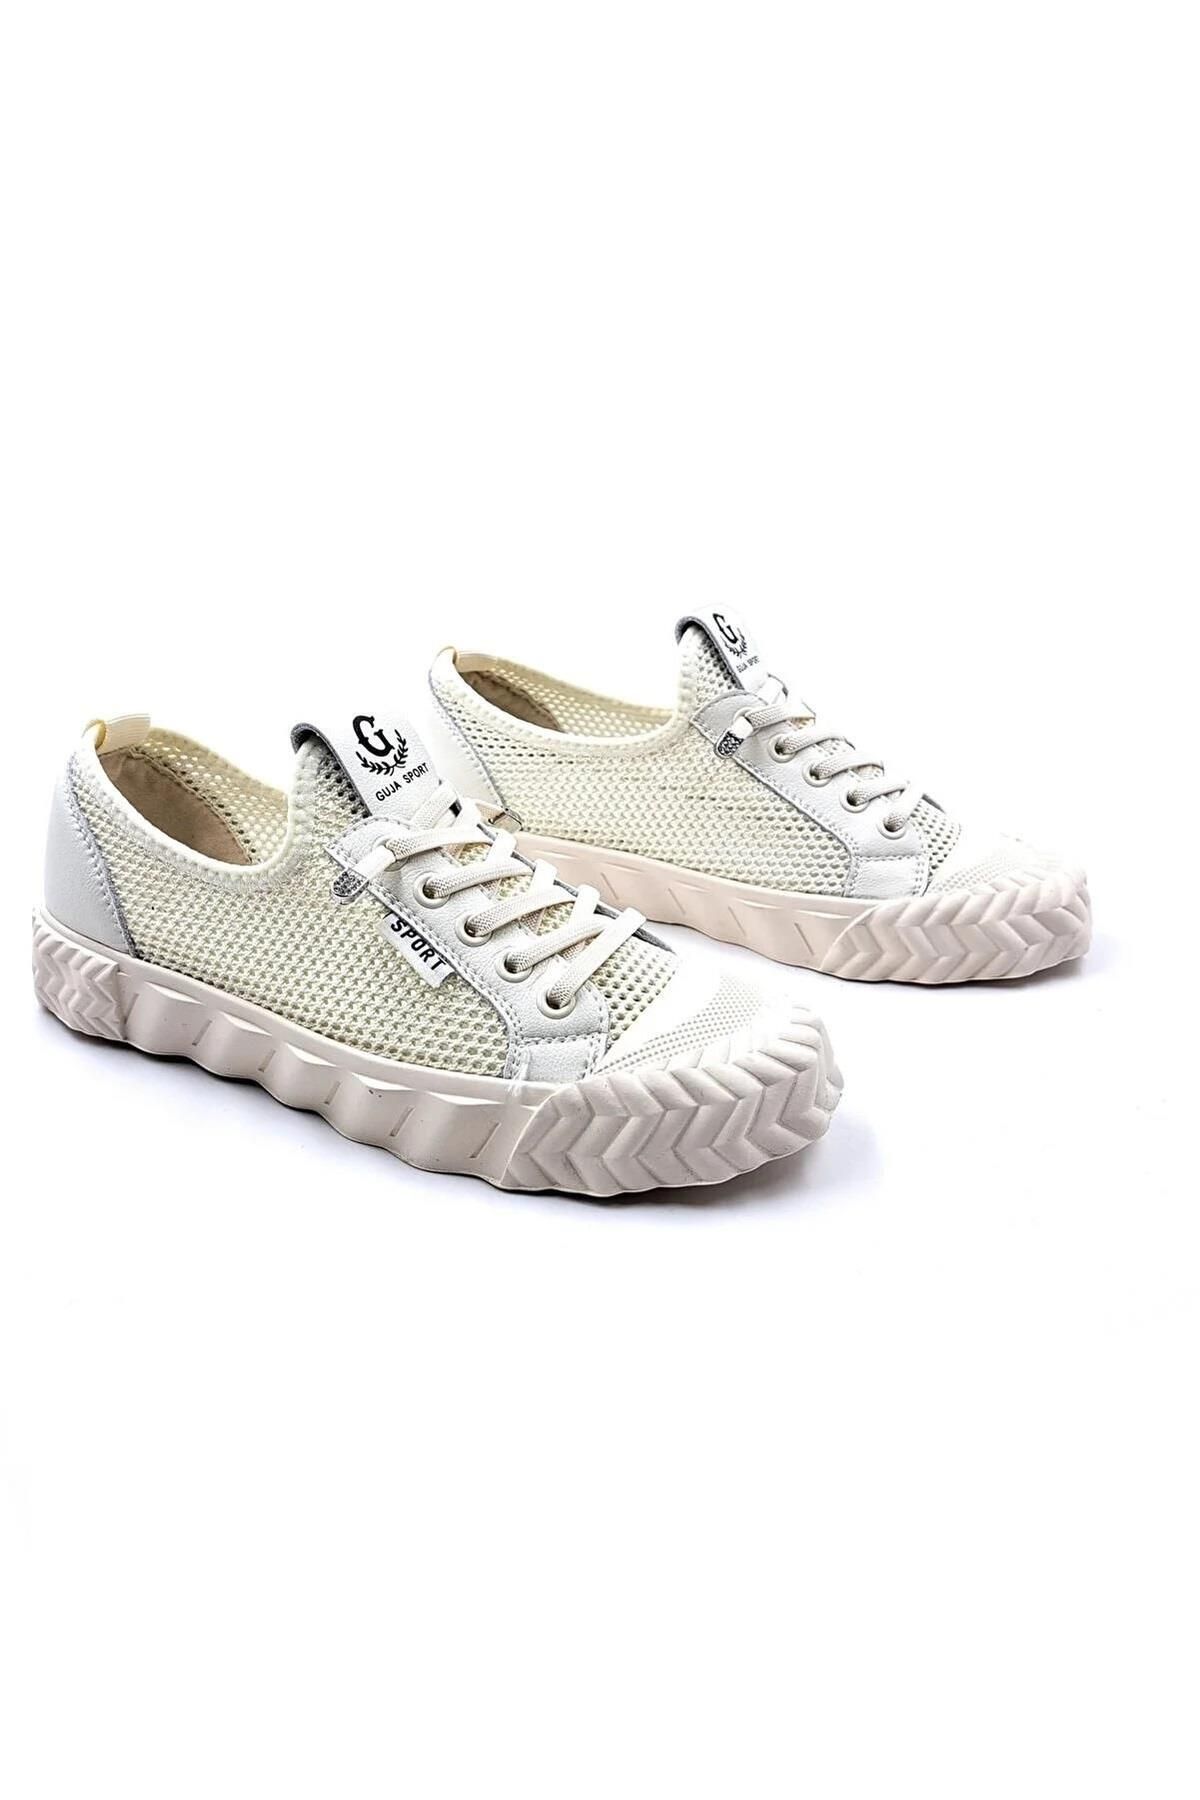 Guja 23y386 Yazlık Fileli Kadın Sneaker Spor Ayakkabı Beyaz